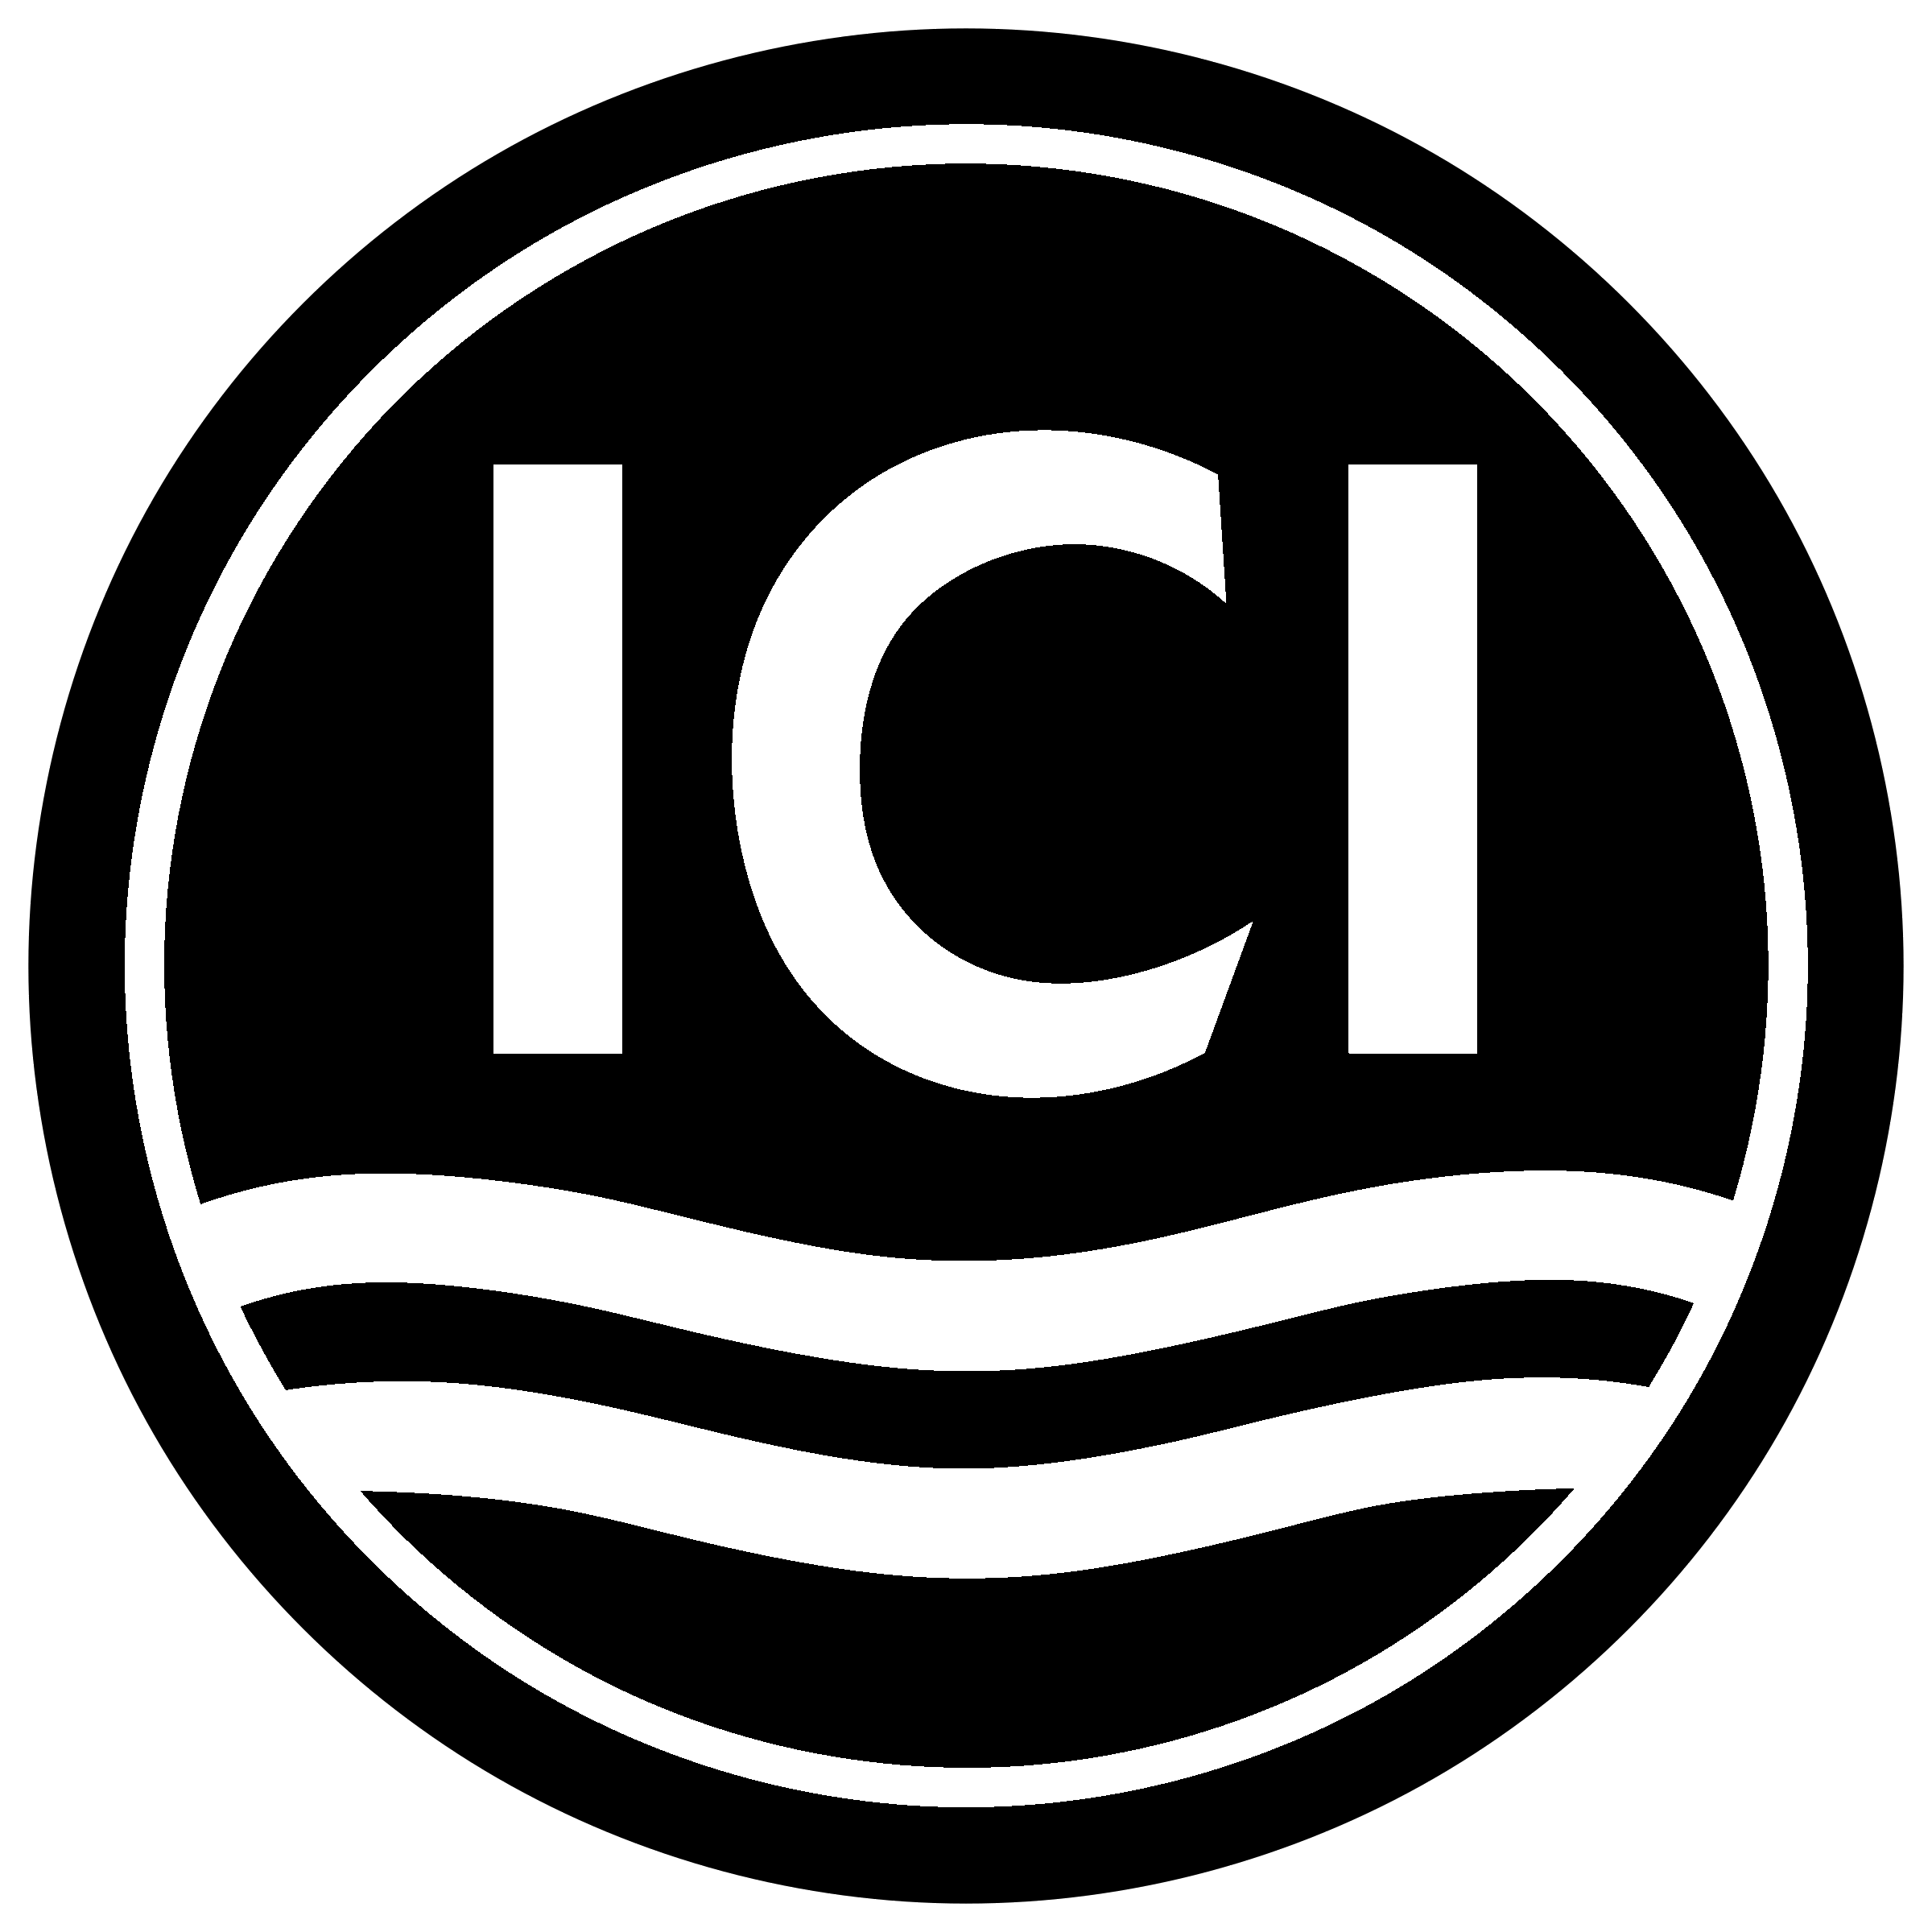 Ici Logo - ICI Logo PNG Transparent & SVG Vector - Freebie Supply